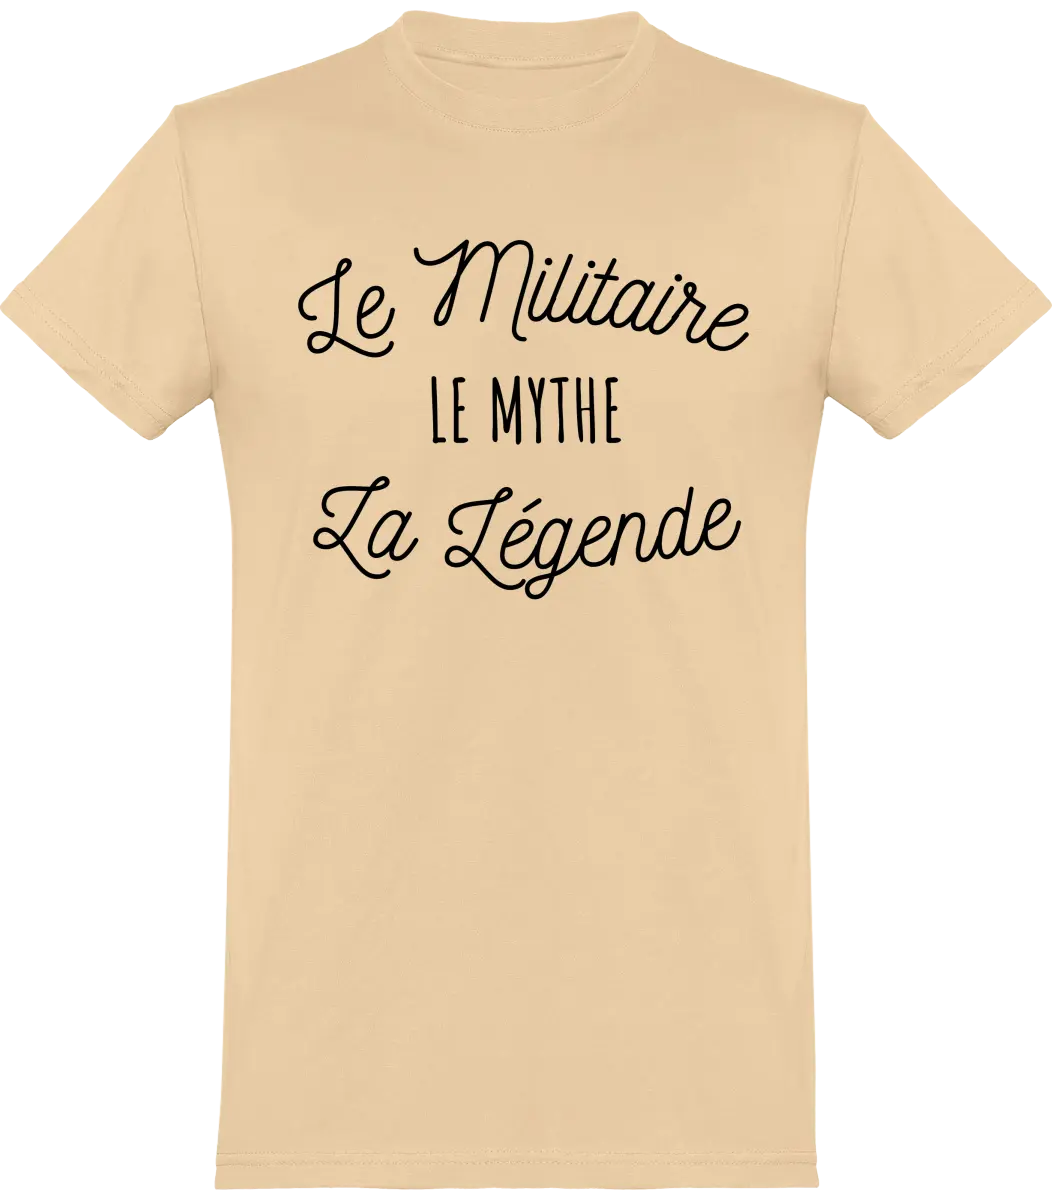 T-shirt Militaire "Le militaire le mythe la legende" | Mixte - French Humour